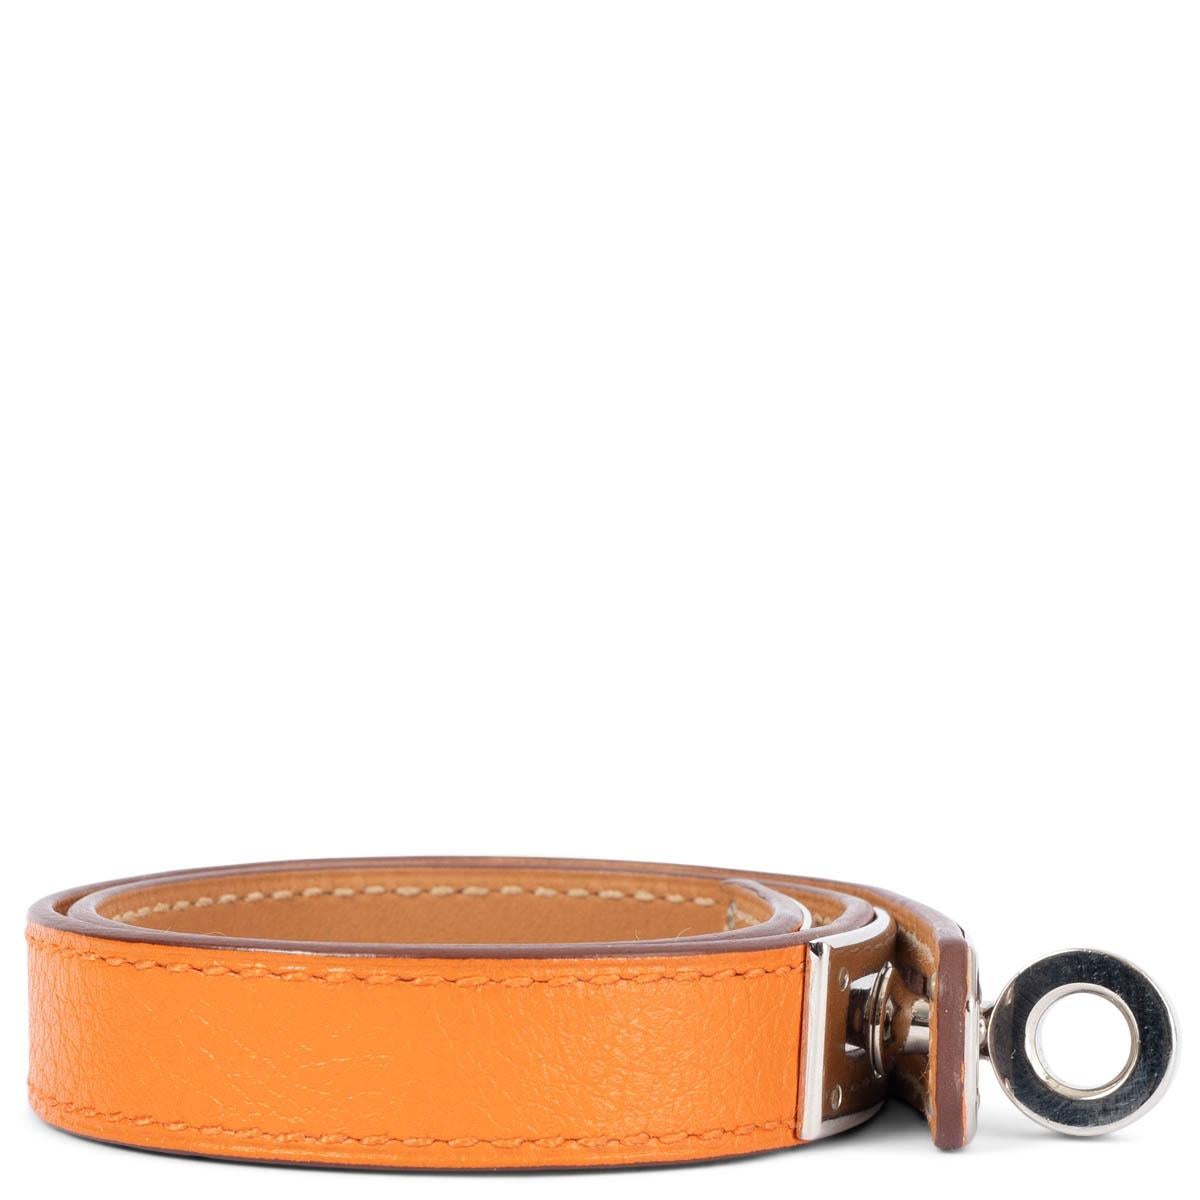 Bracelet Kelly Double Tour 100% authentique en cuir Swift orange avec fermeture Kelly plaquée palladium. A été porté et est en excellent état. Livré avec boîte. 

Mesures
Taille de l'étiquette	S
Taille	S
Largeur	1.3cm (0.5in)
Longueur	37cm